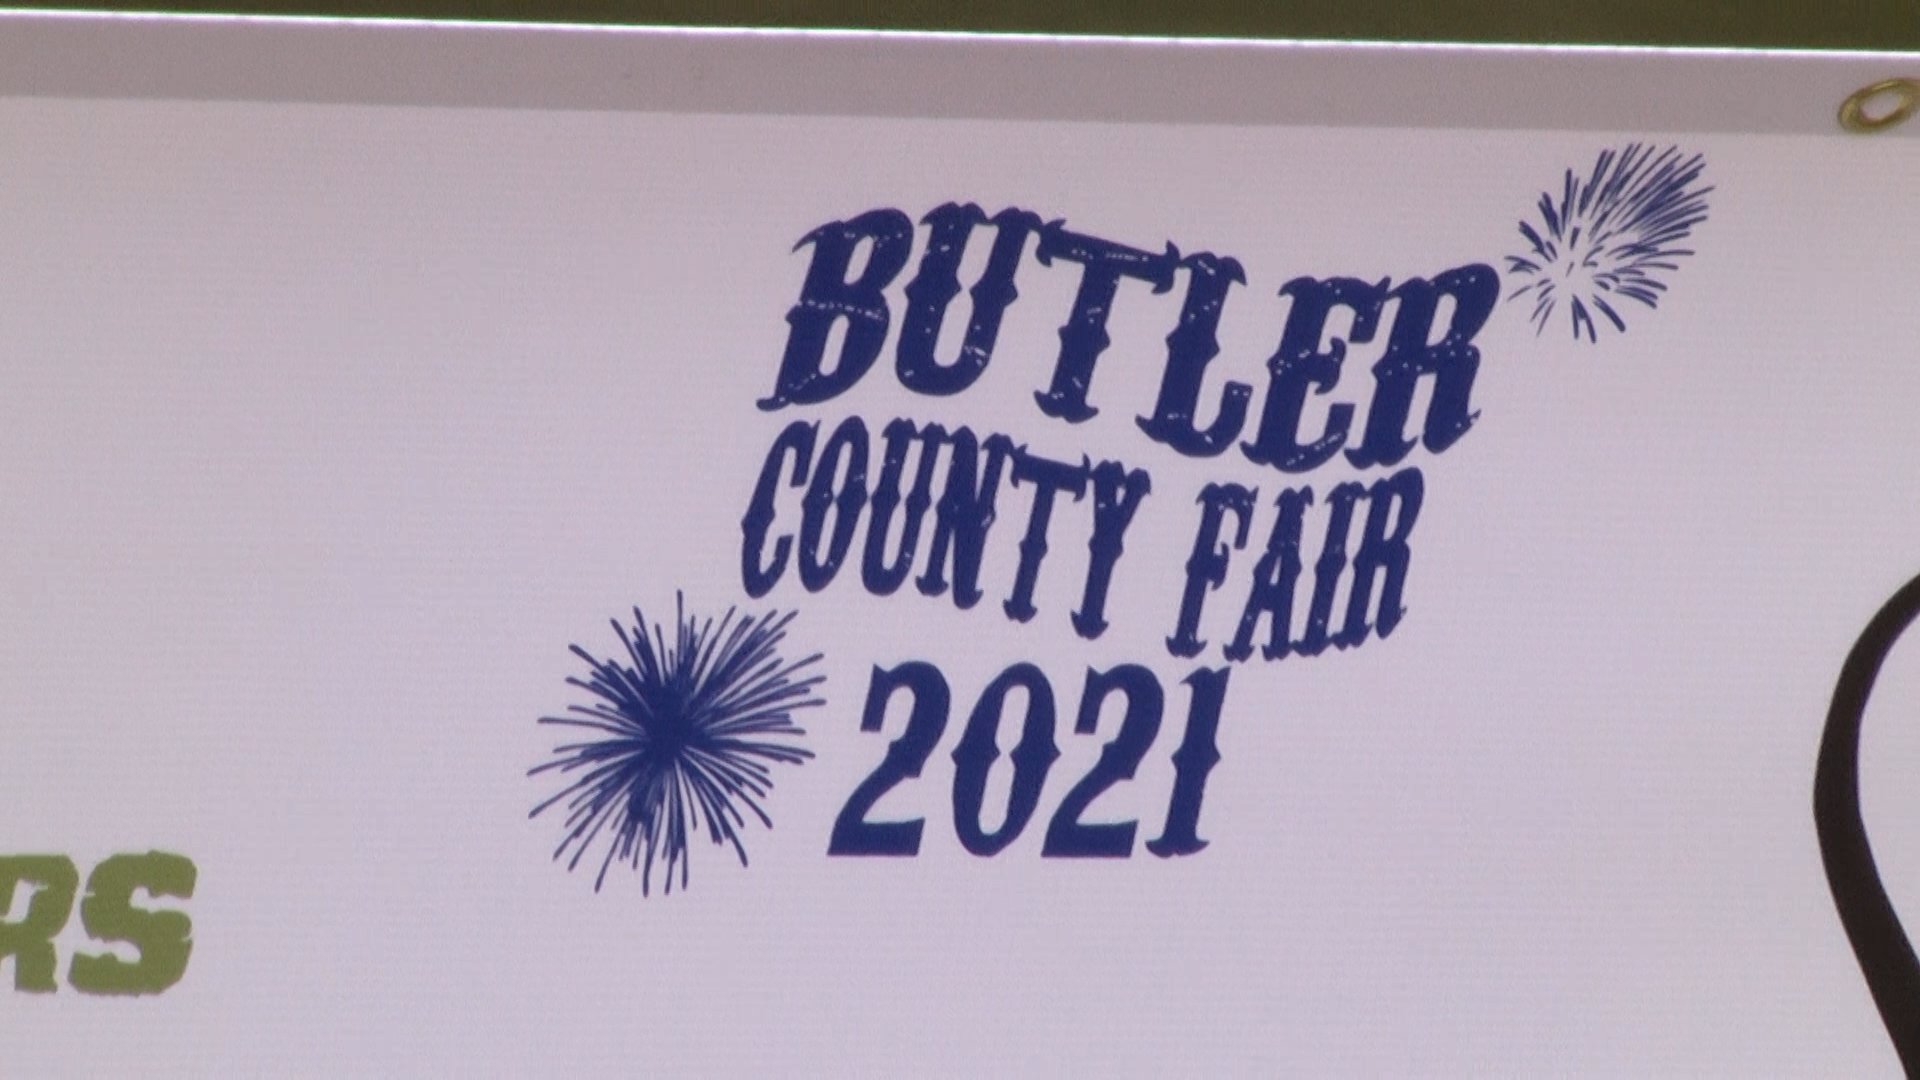 Butler County Fair 2024 Hope